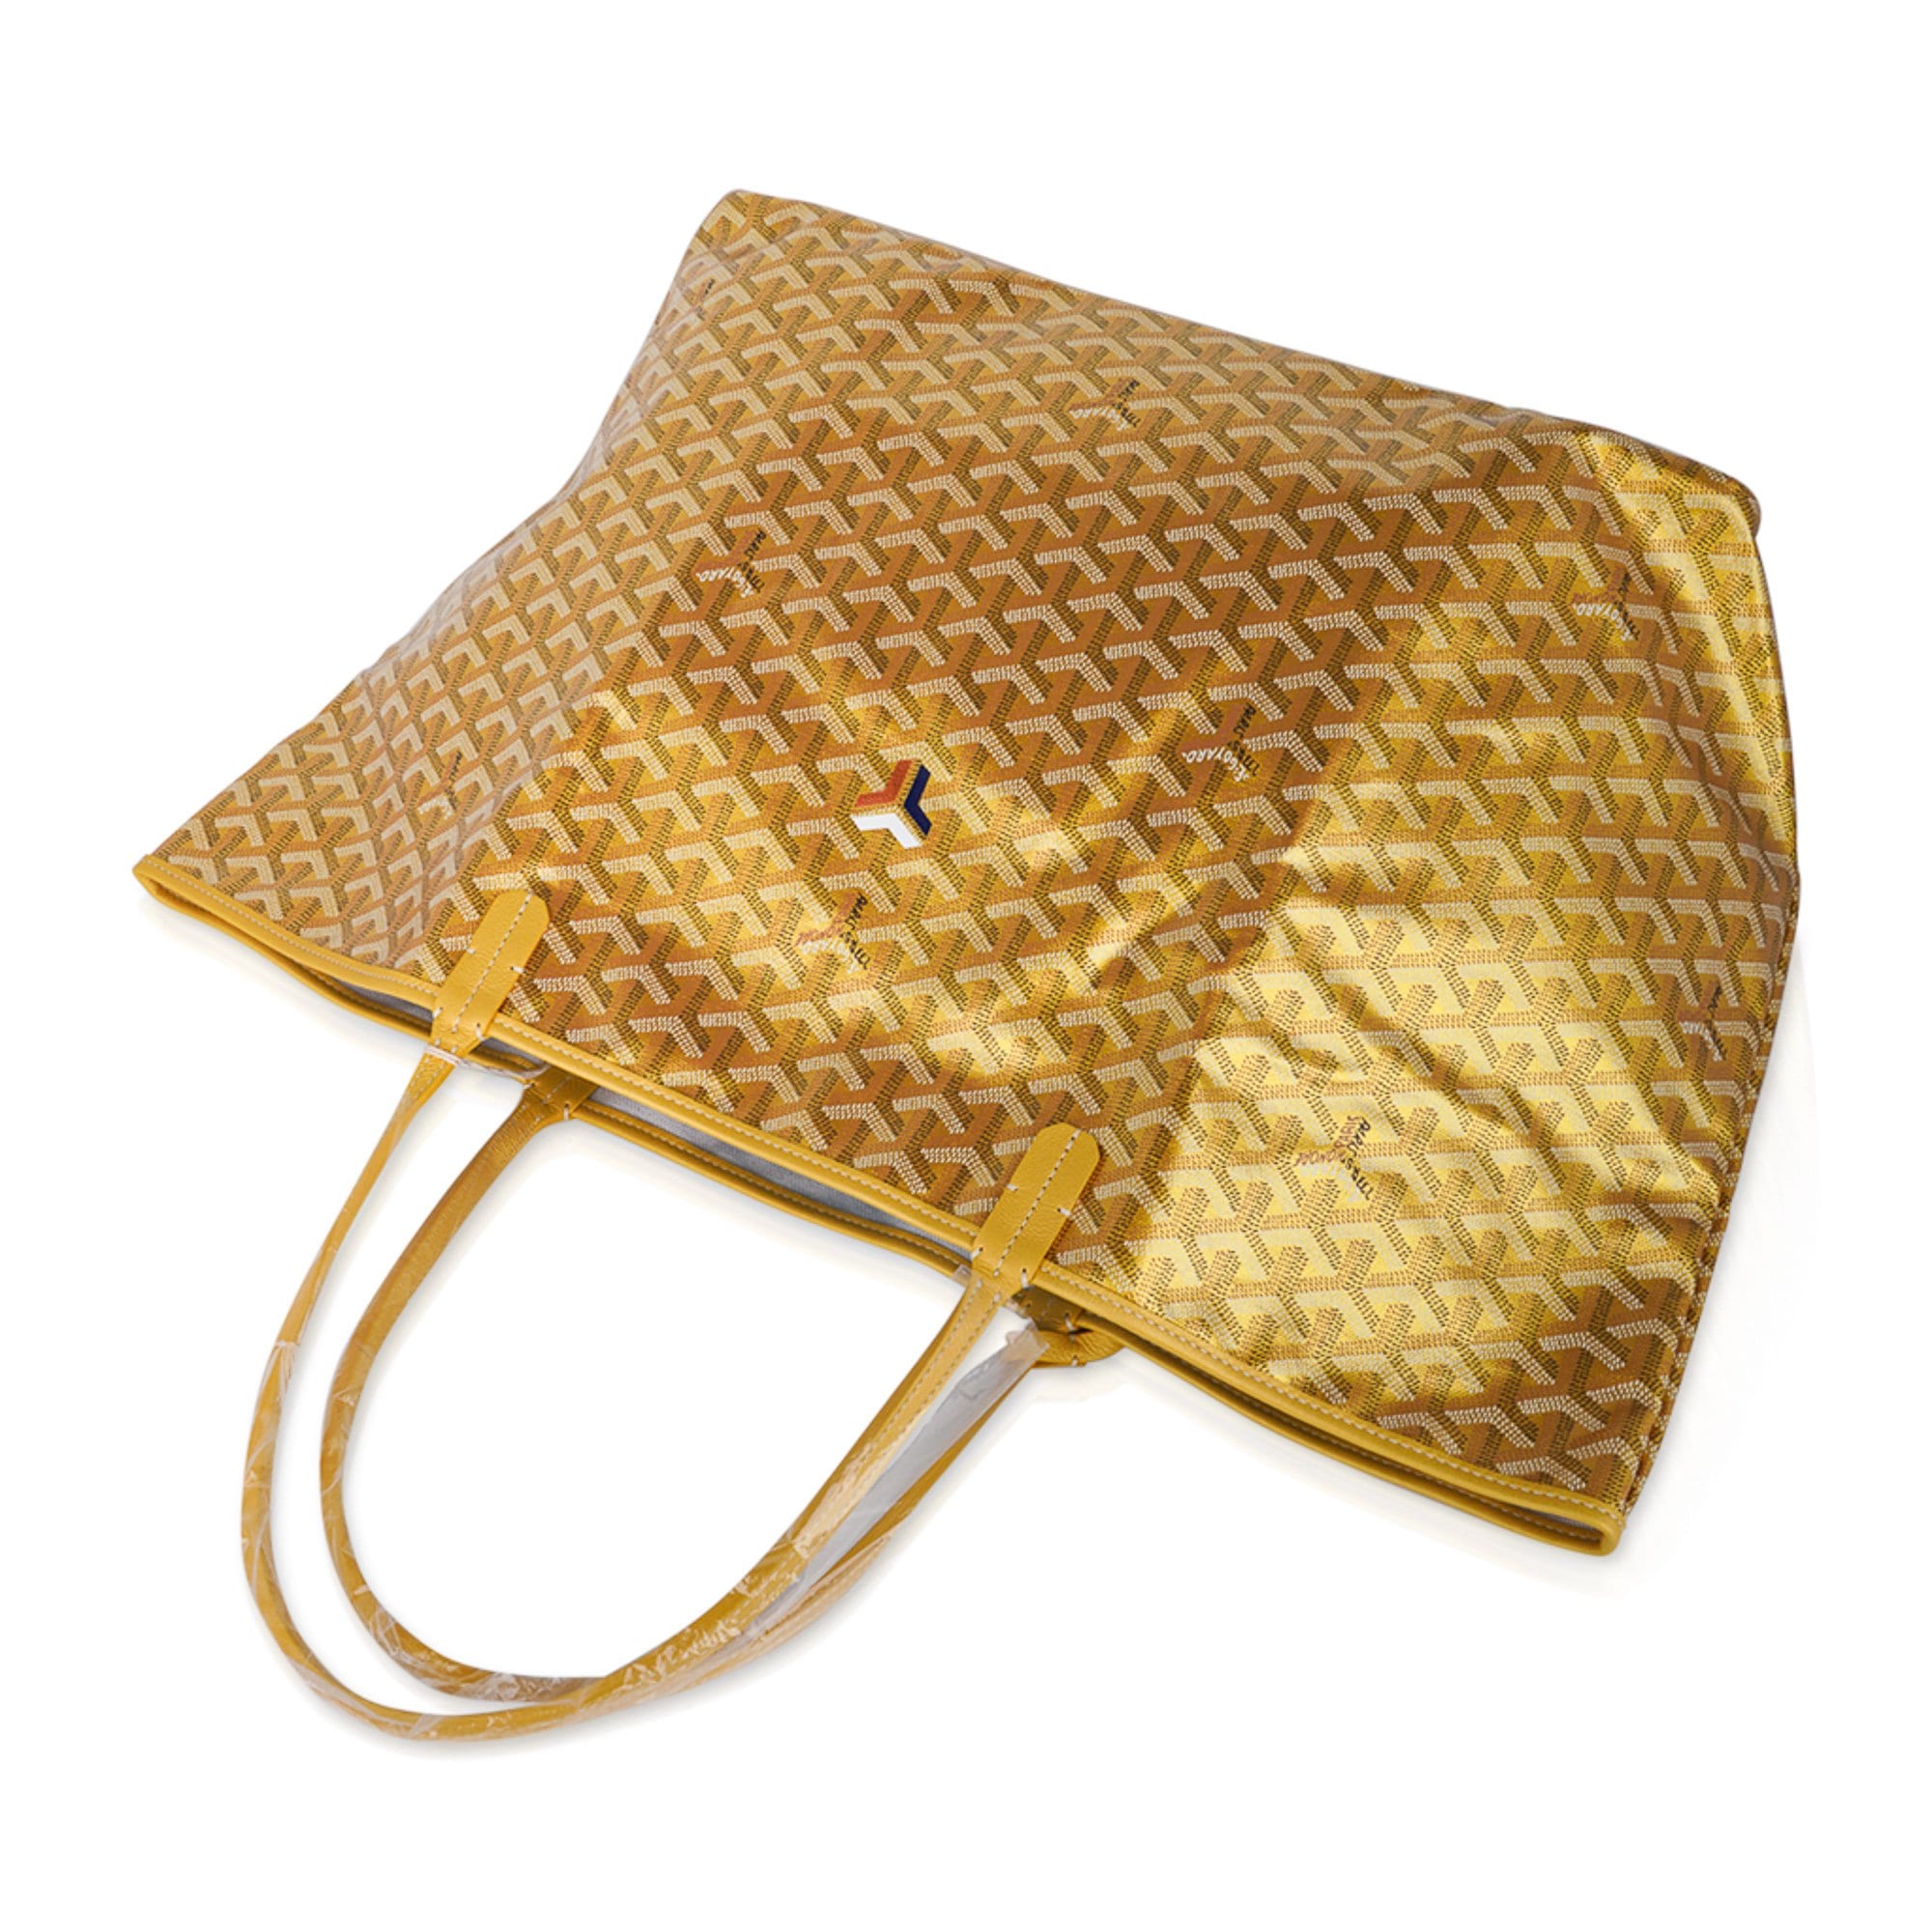 Authentic Goyard limited edition Saint Louis Claire-Voie GM Bag /Tote -  Yellow